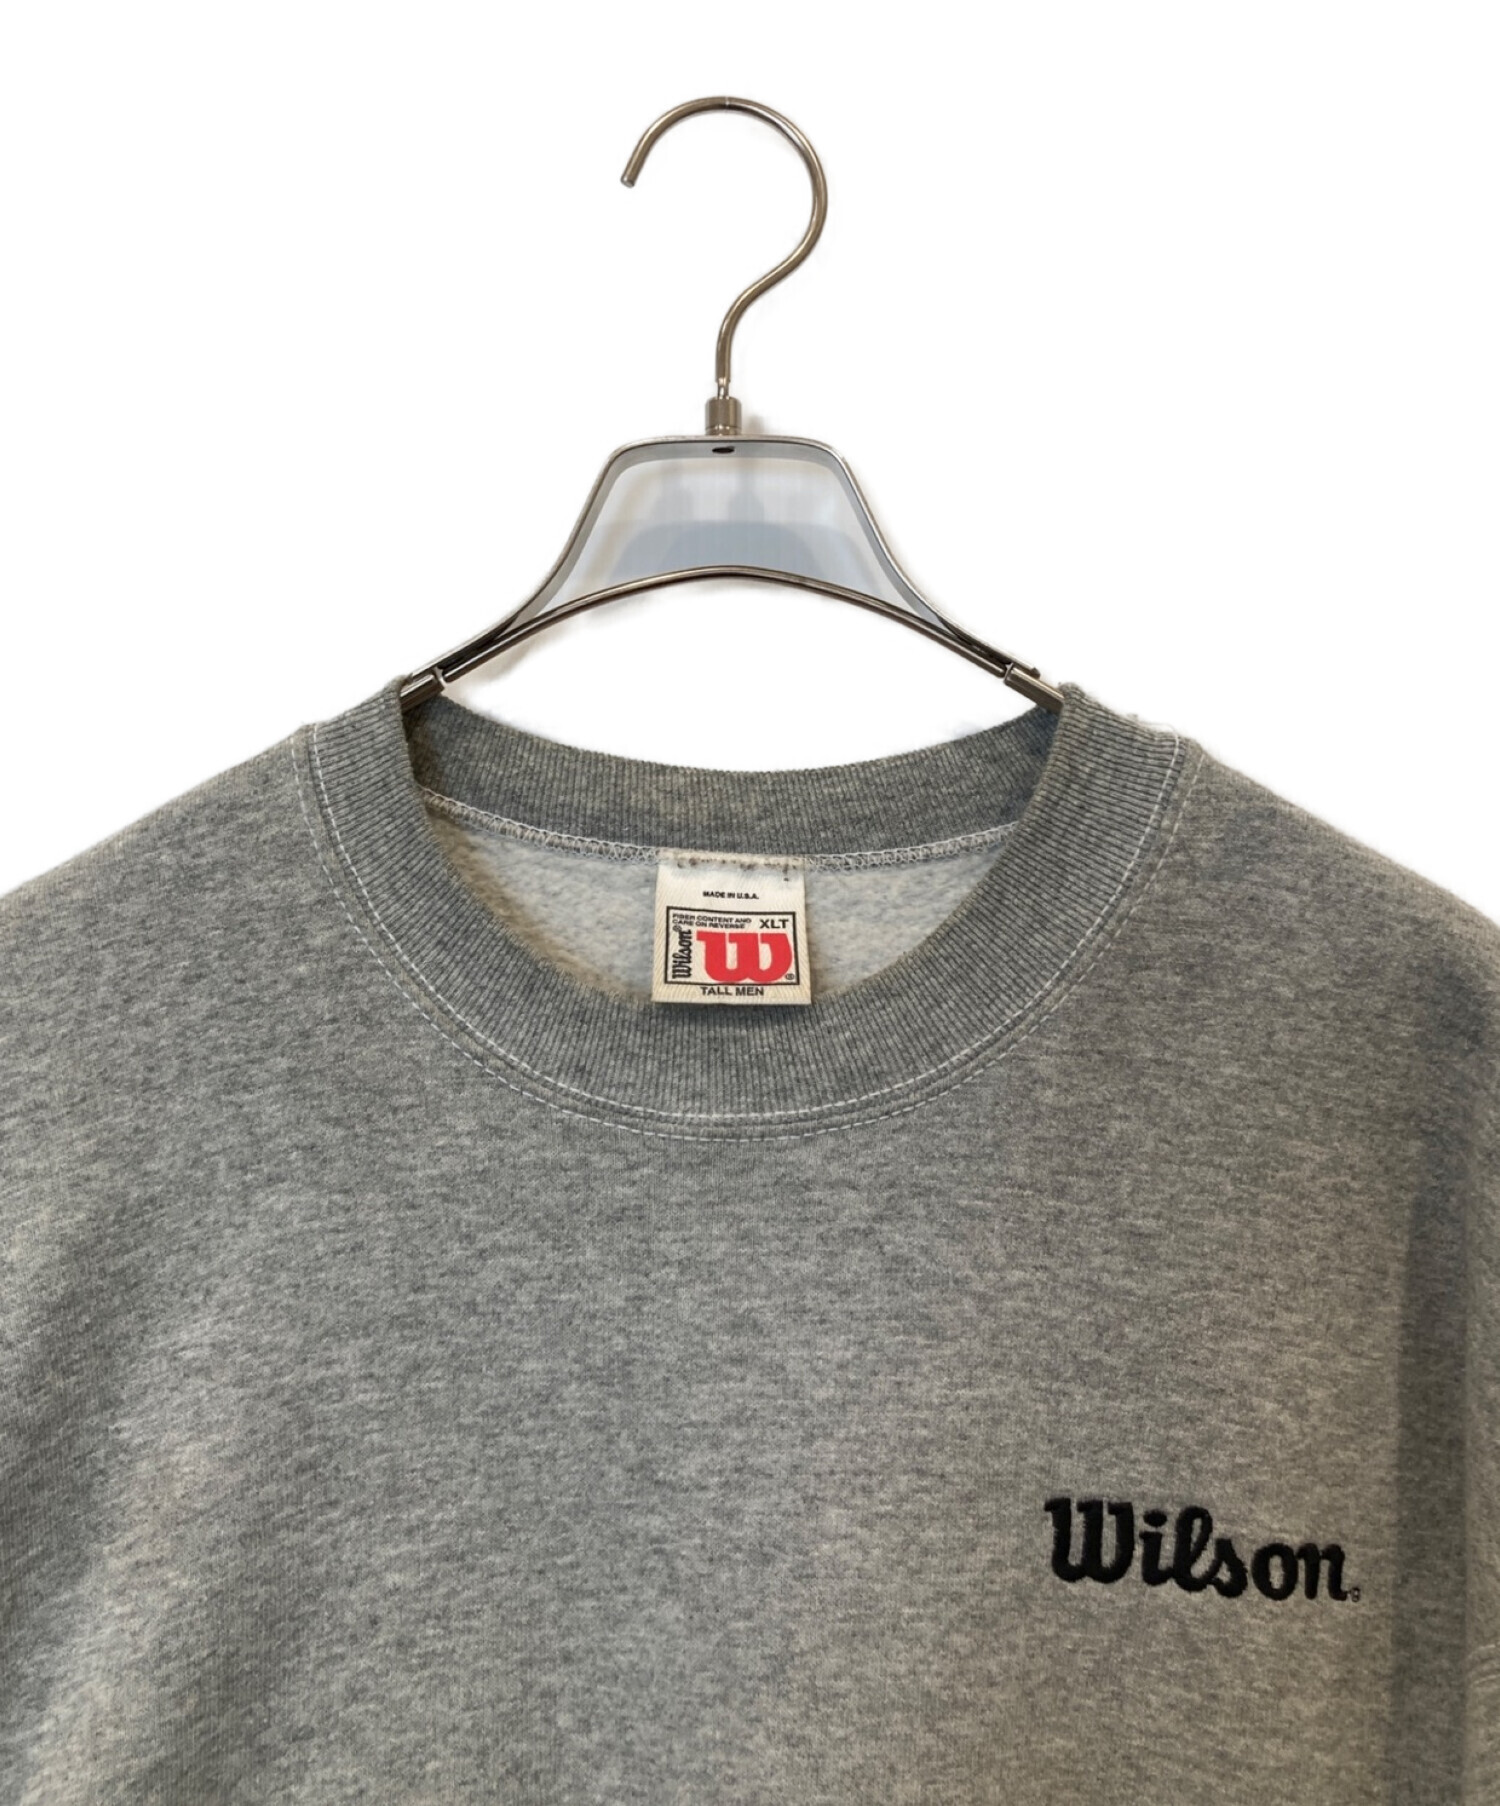 Wilson (ウィルソン) 【古着】クルーネックスウェット グレー サイズ:XLT